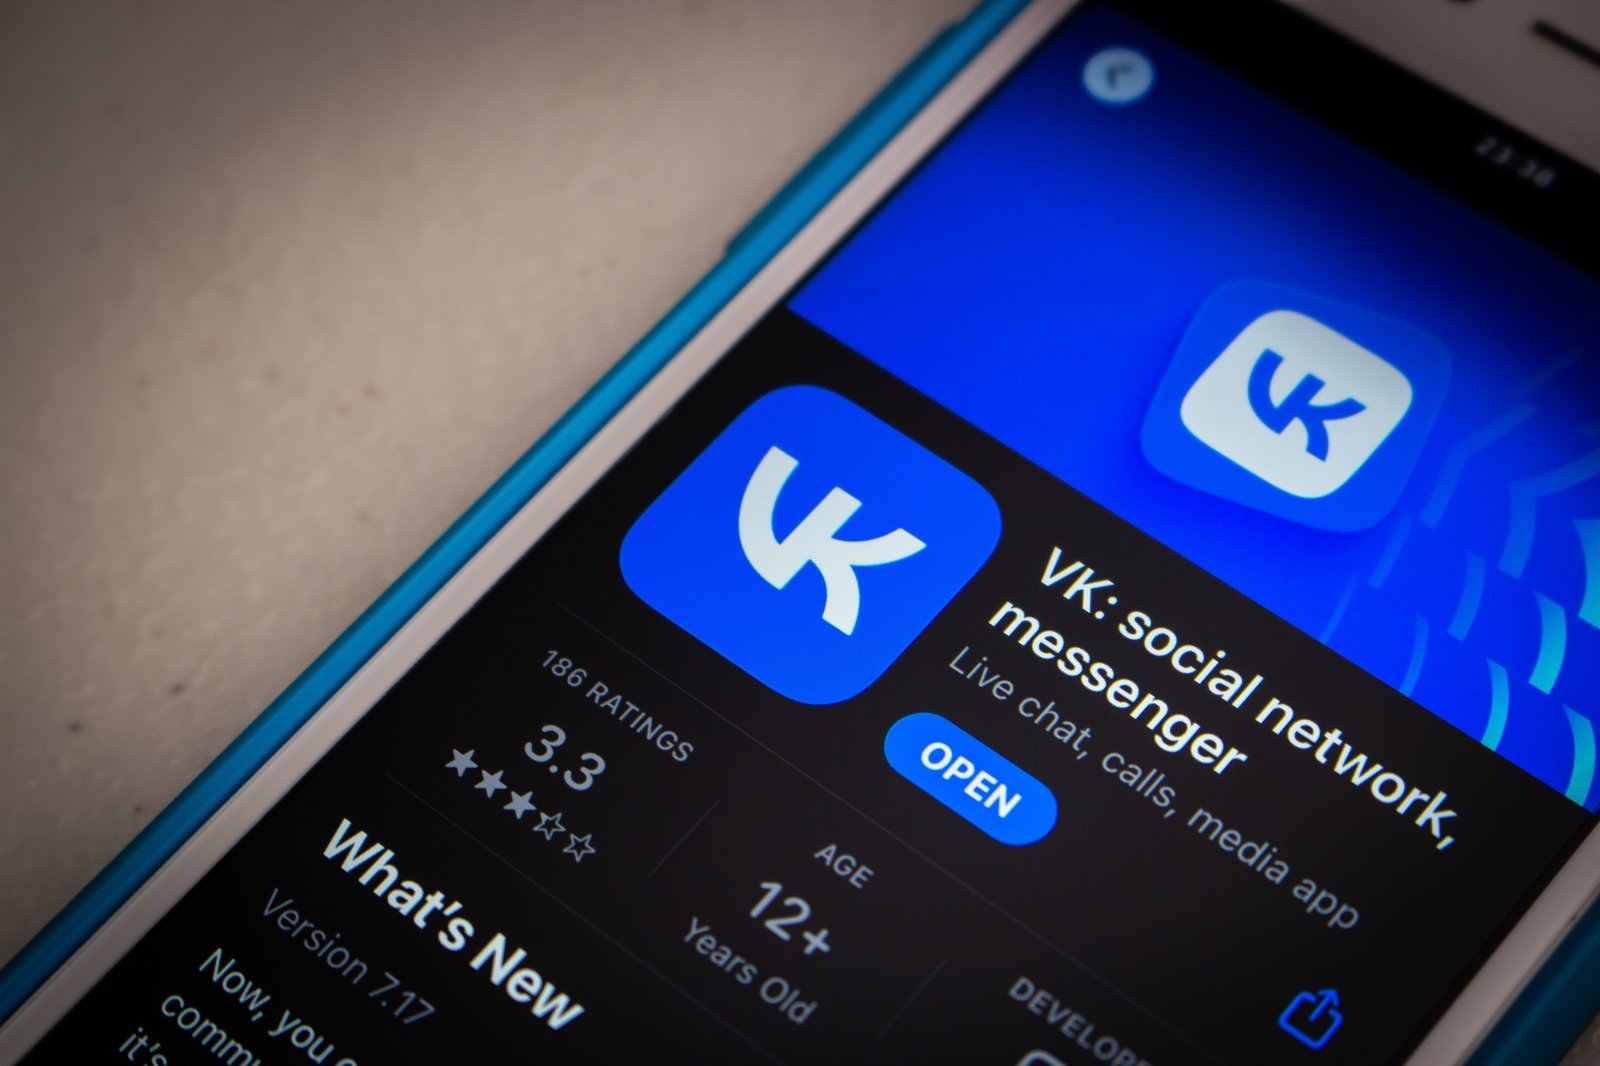 Apple fjerner russiske apper fra App Store: VKontakte og Mail.ru blant dem